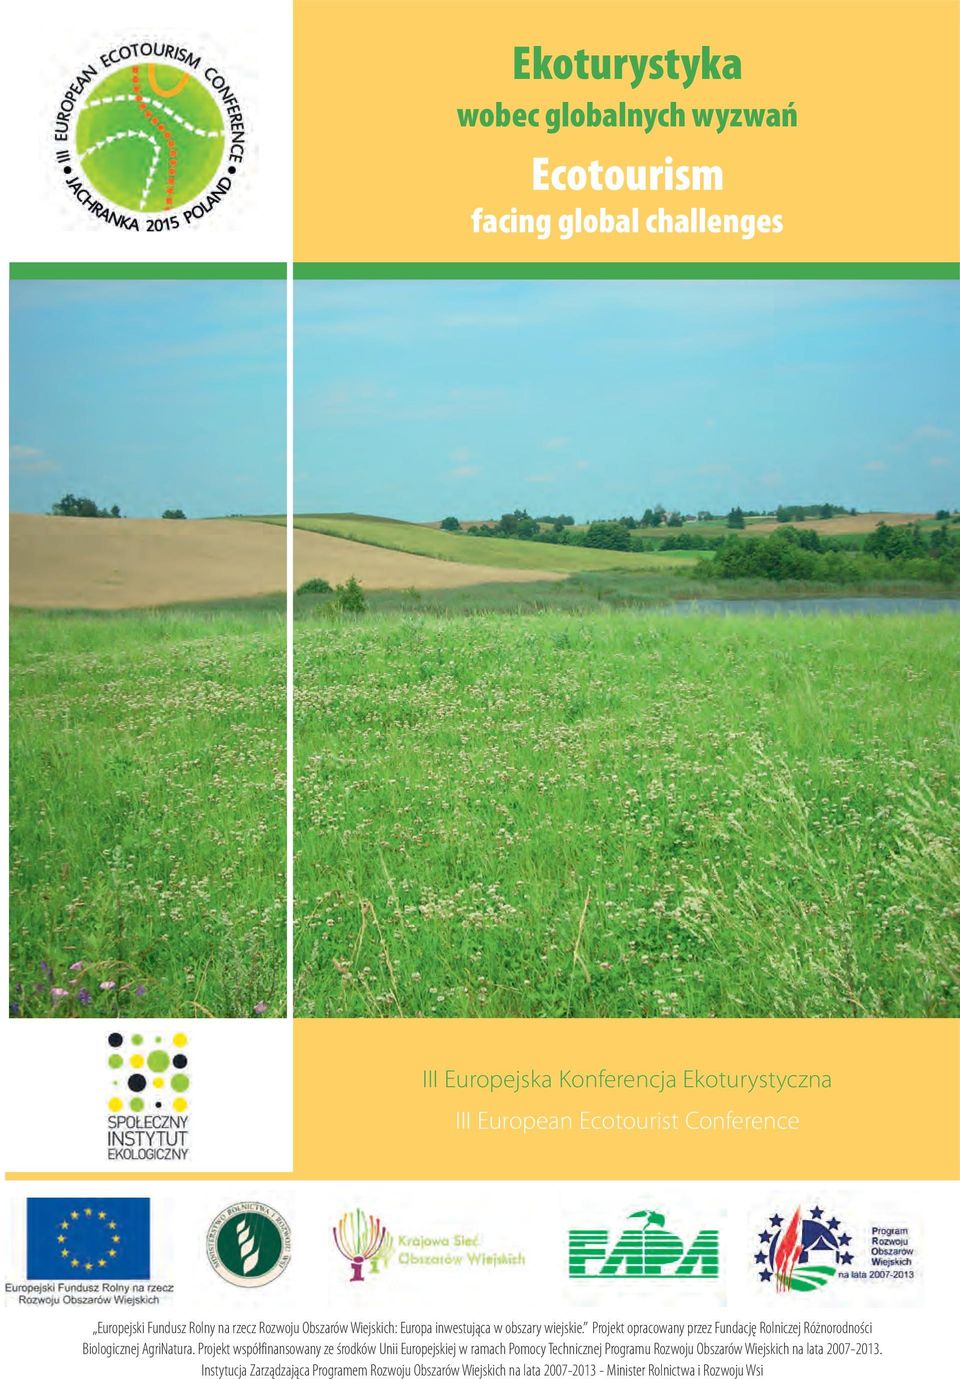 Projekt opracowany przez Fundację Rolniczej Różnorodności Biologicznej AgriNatura.